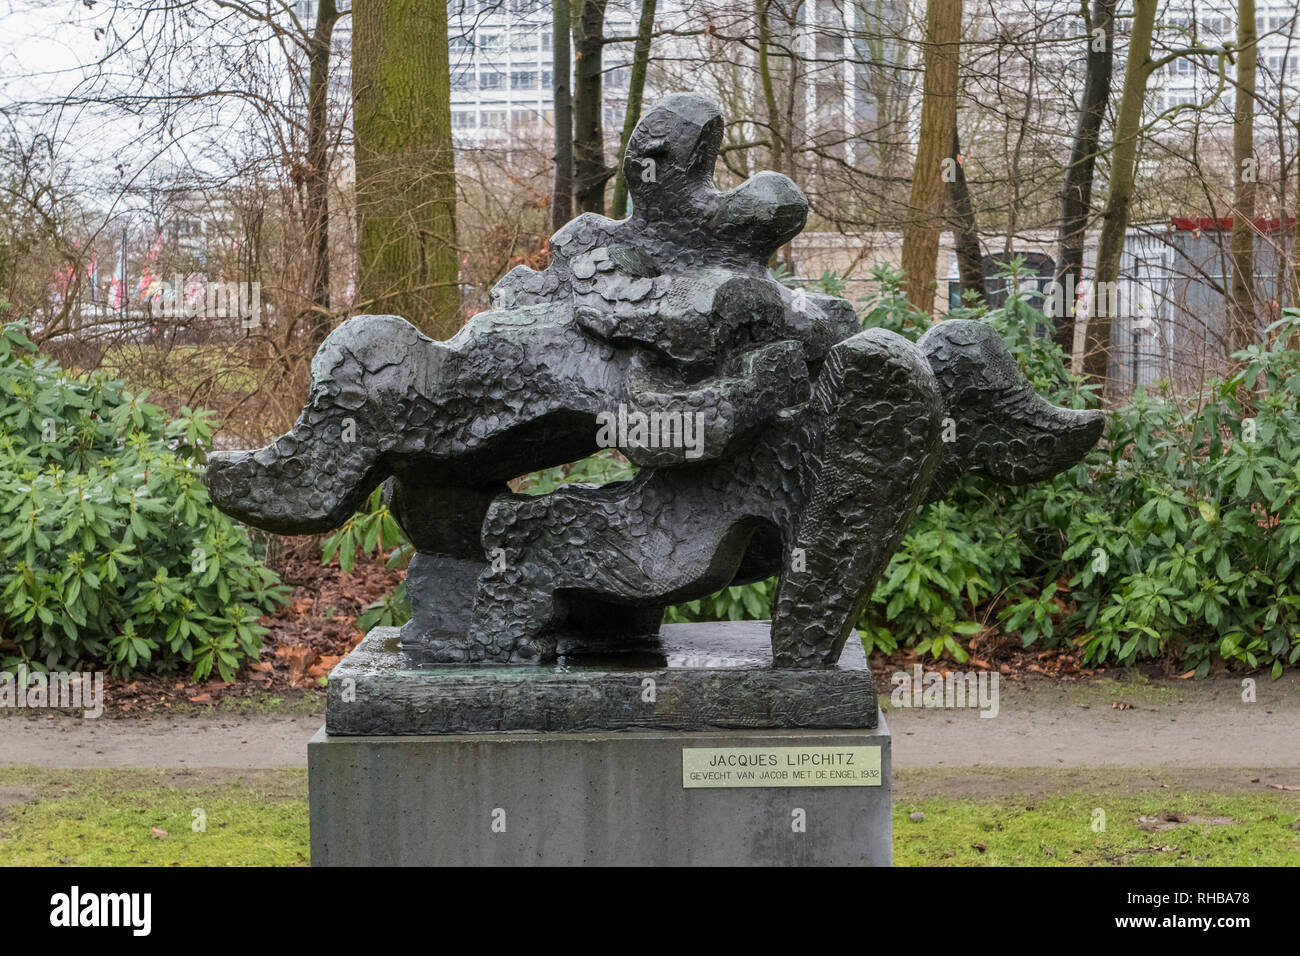 Lotta di Giacobbe con l angelo statua in bronzo di Jacques Lipchitz 1932 nel Parco Middelheim Museum di Anversa, Belgio Foto Stock